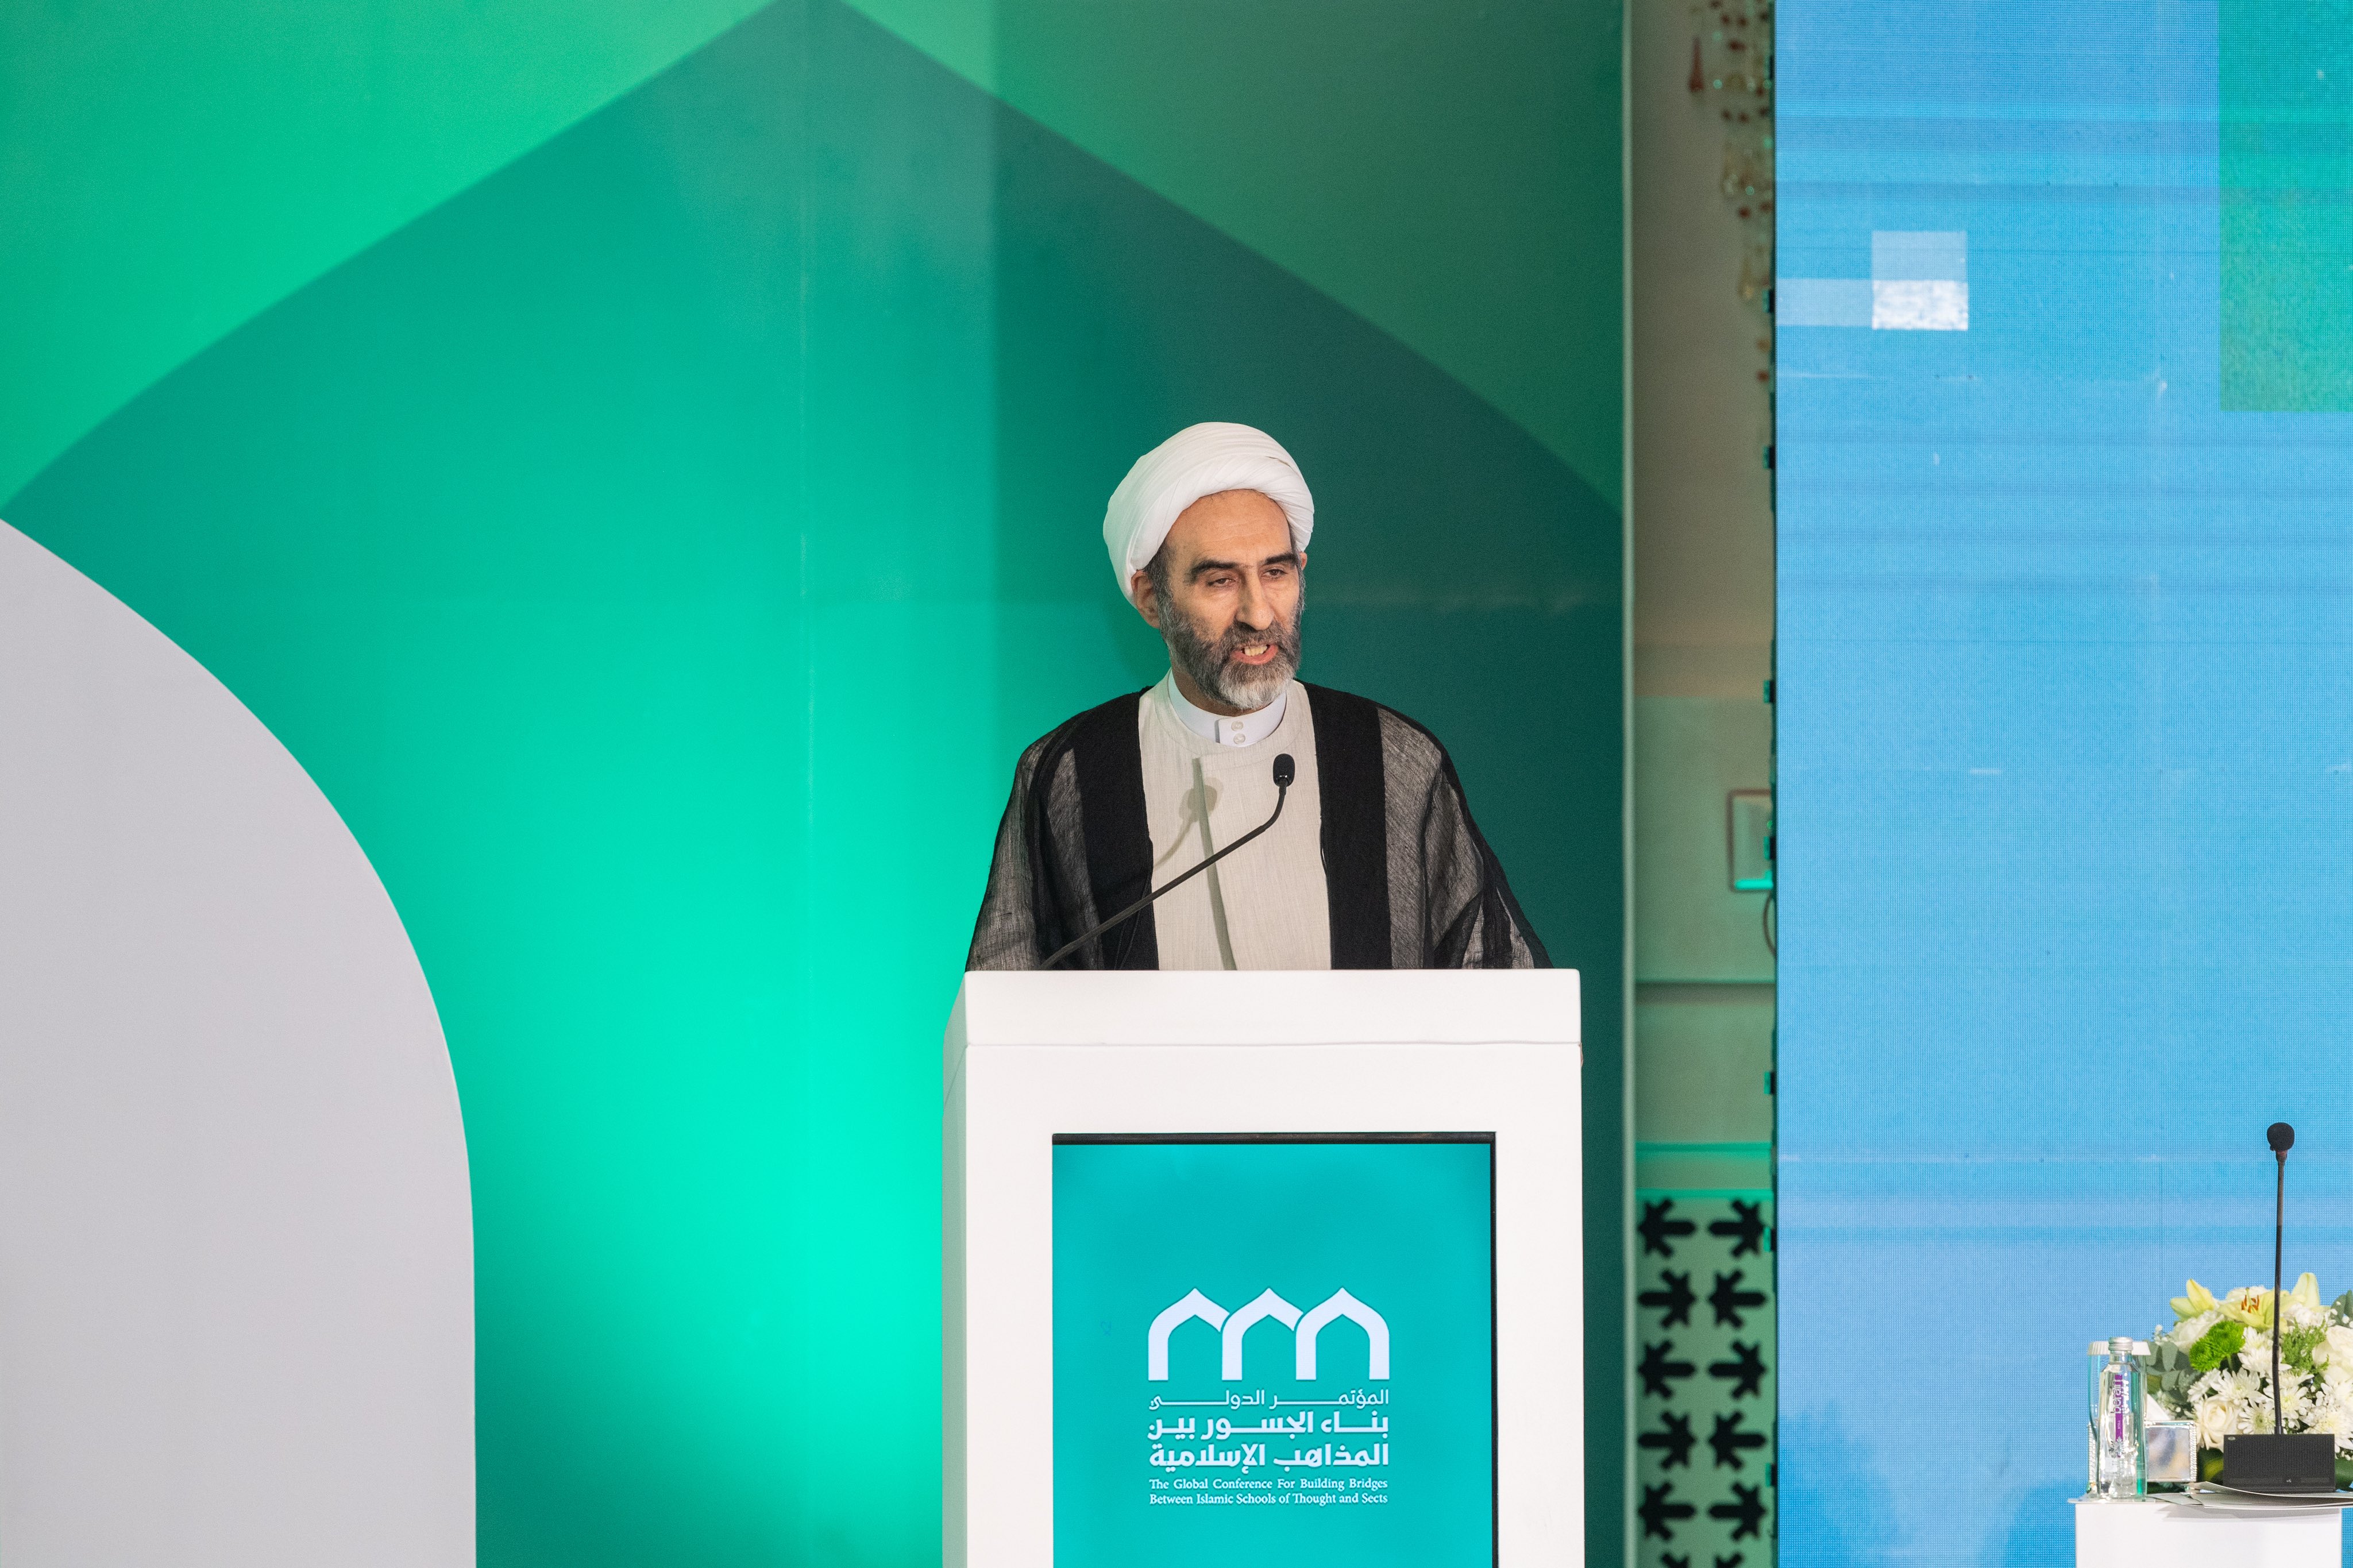 اسلامی جمہوریہ ایران کے ماہرین کی اسمبلی کے رکن، آیت اللہ الشیخ احمد مبلغی”اسلامی مذاہب کے درمیان پلوں کی تعمیر“ کانفرنس کےافتتاحی اجلاس سے خطاب کرتے ہوئے: